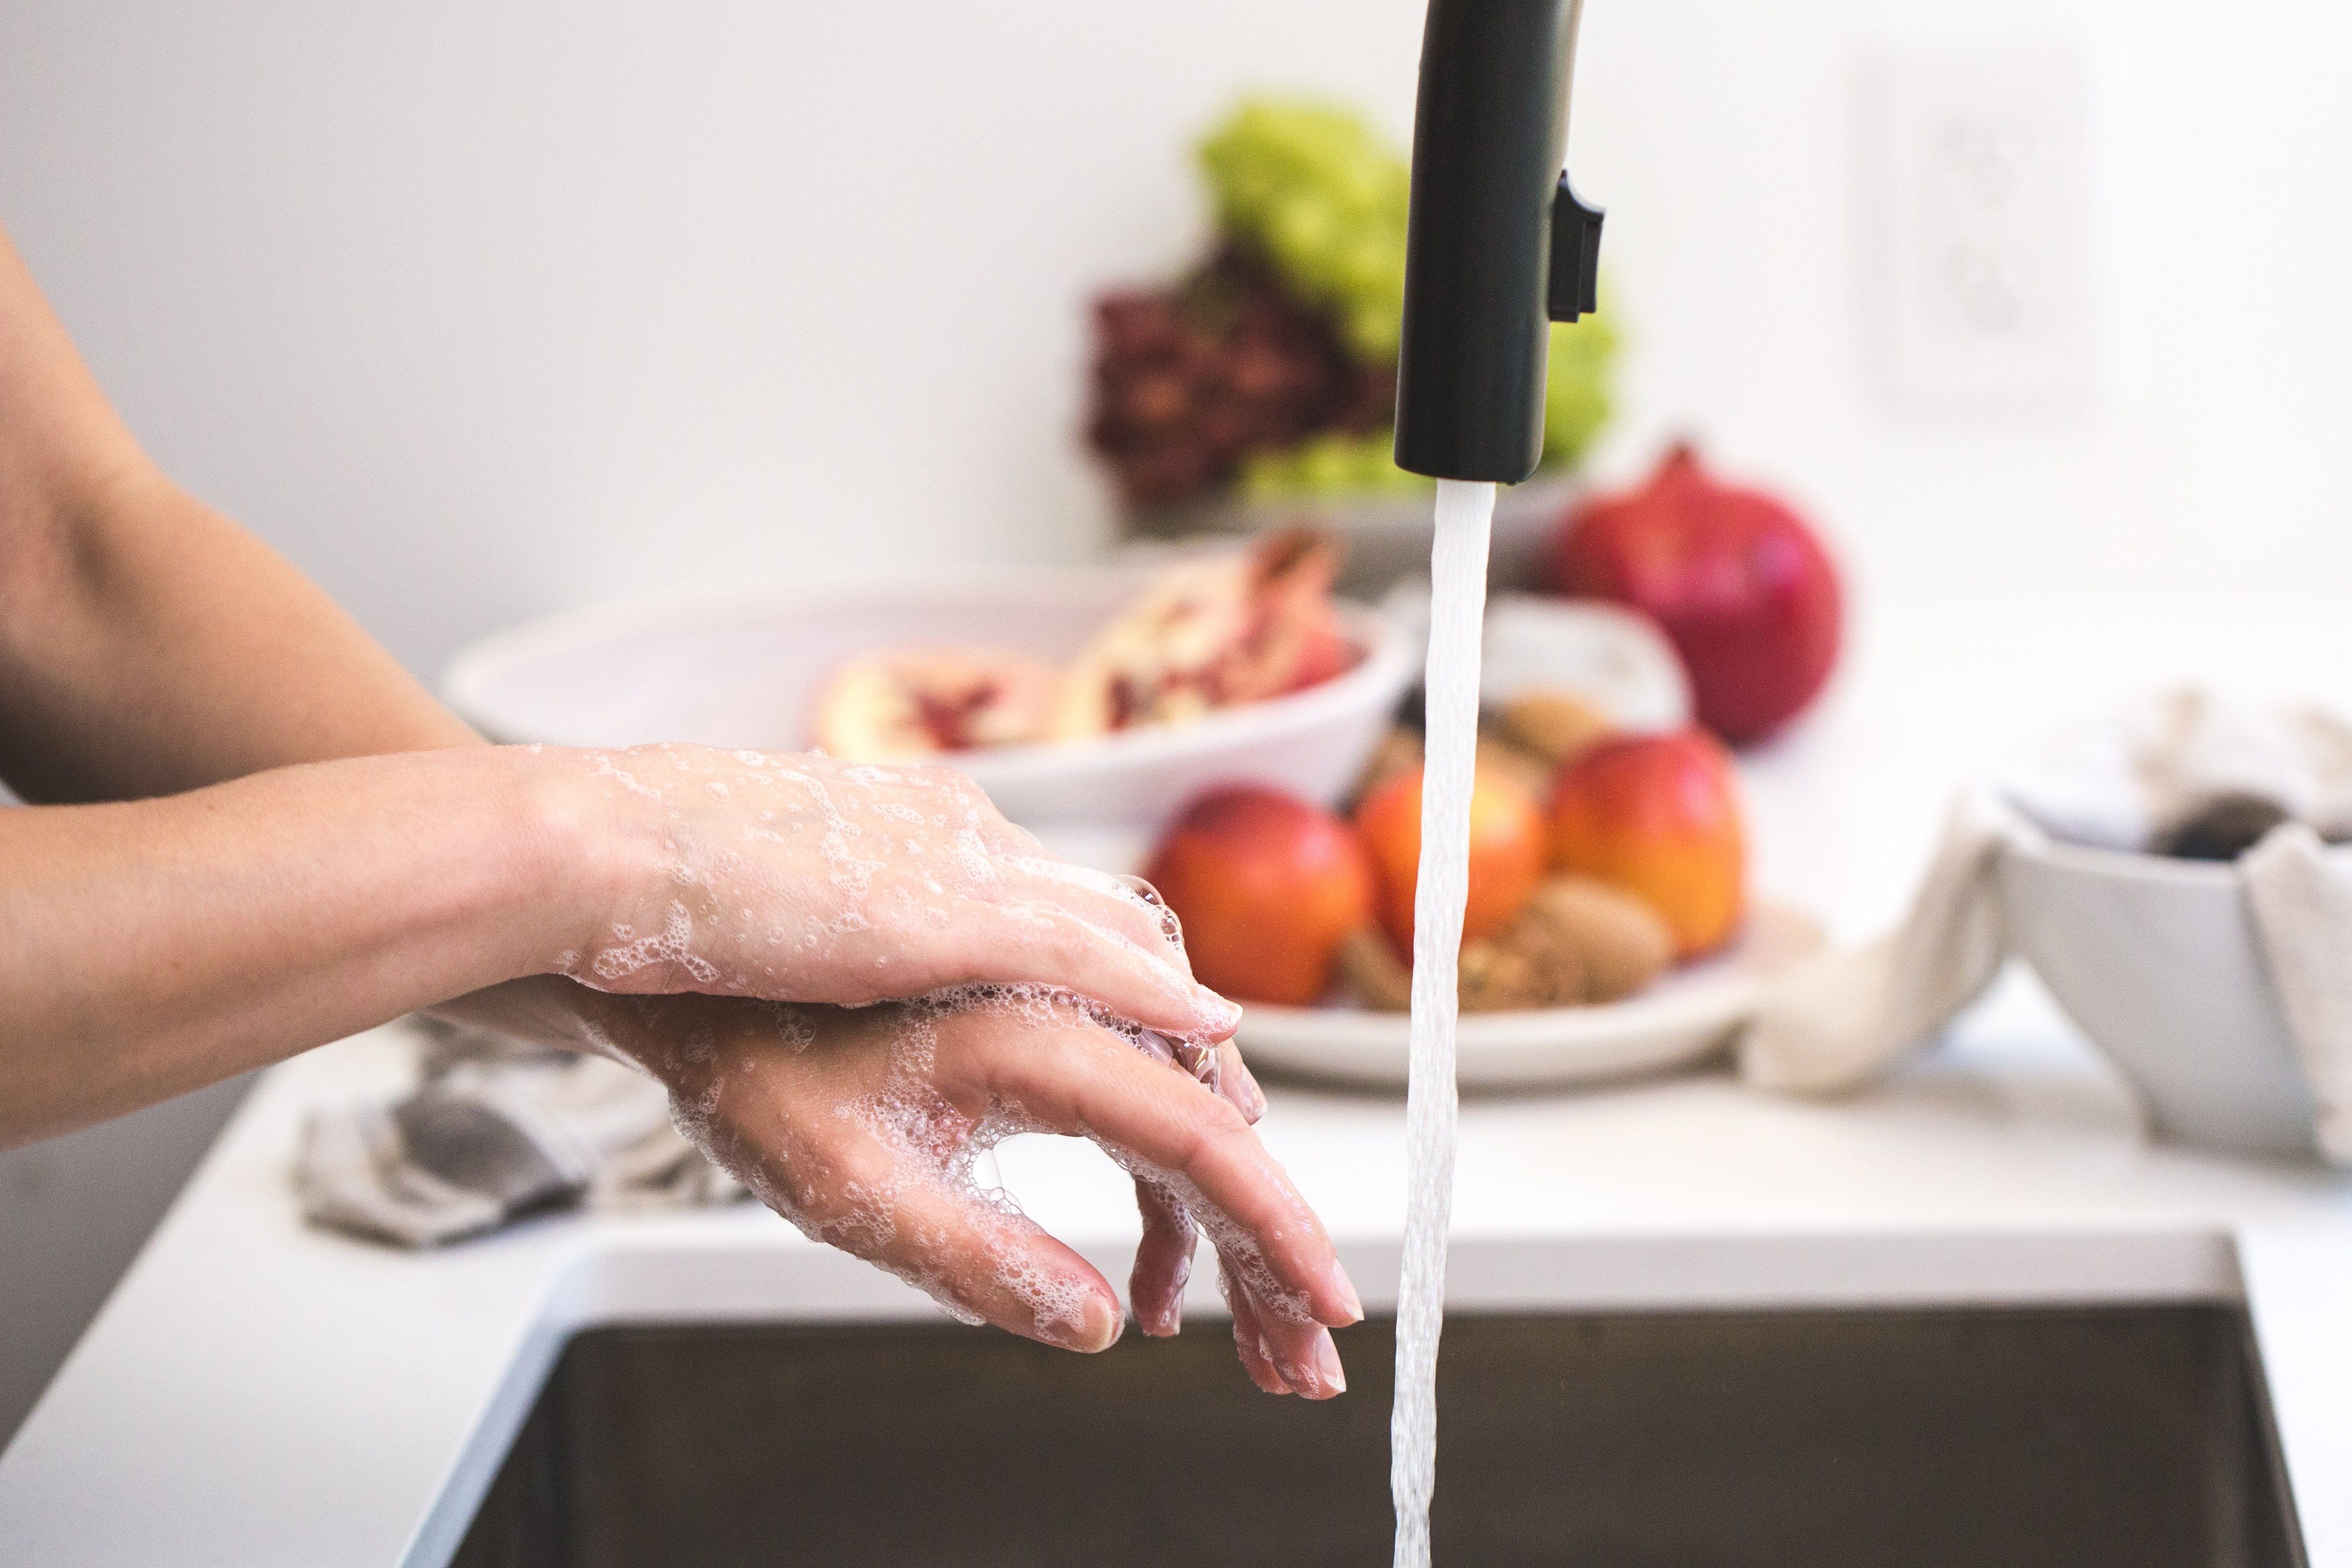 Тщательно. Гигиена на кухне. Мытье рук и овощей. Мытье рук перед едой. Помыть руки с мылом на кухне.